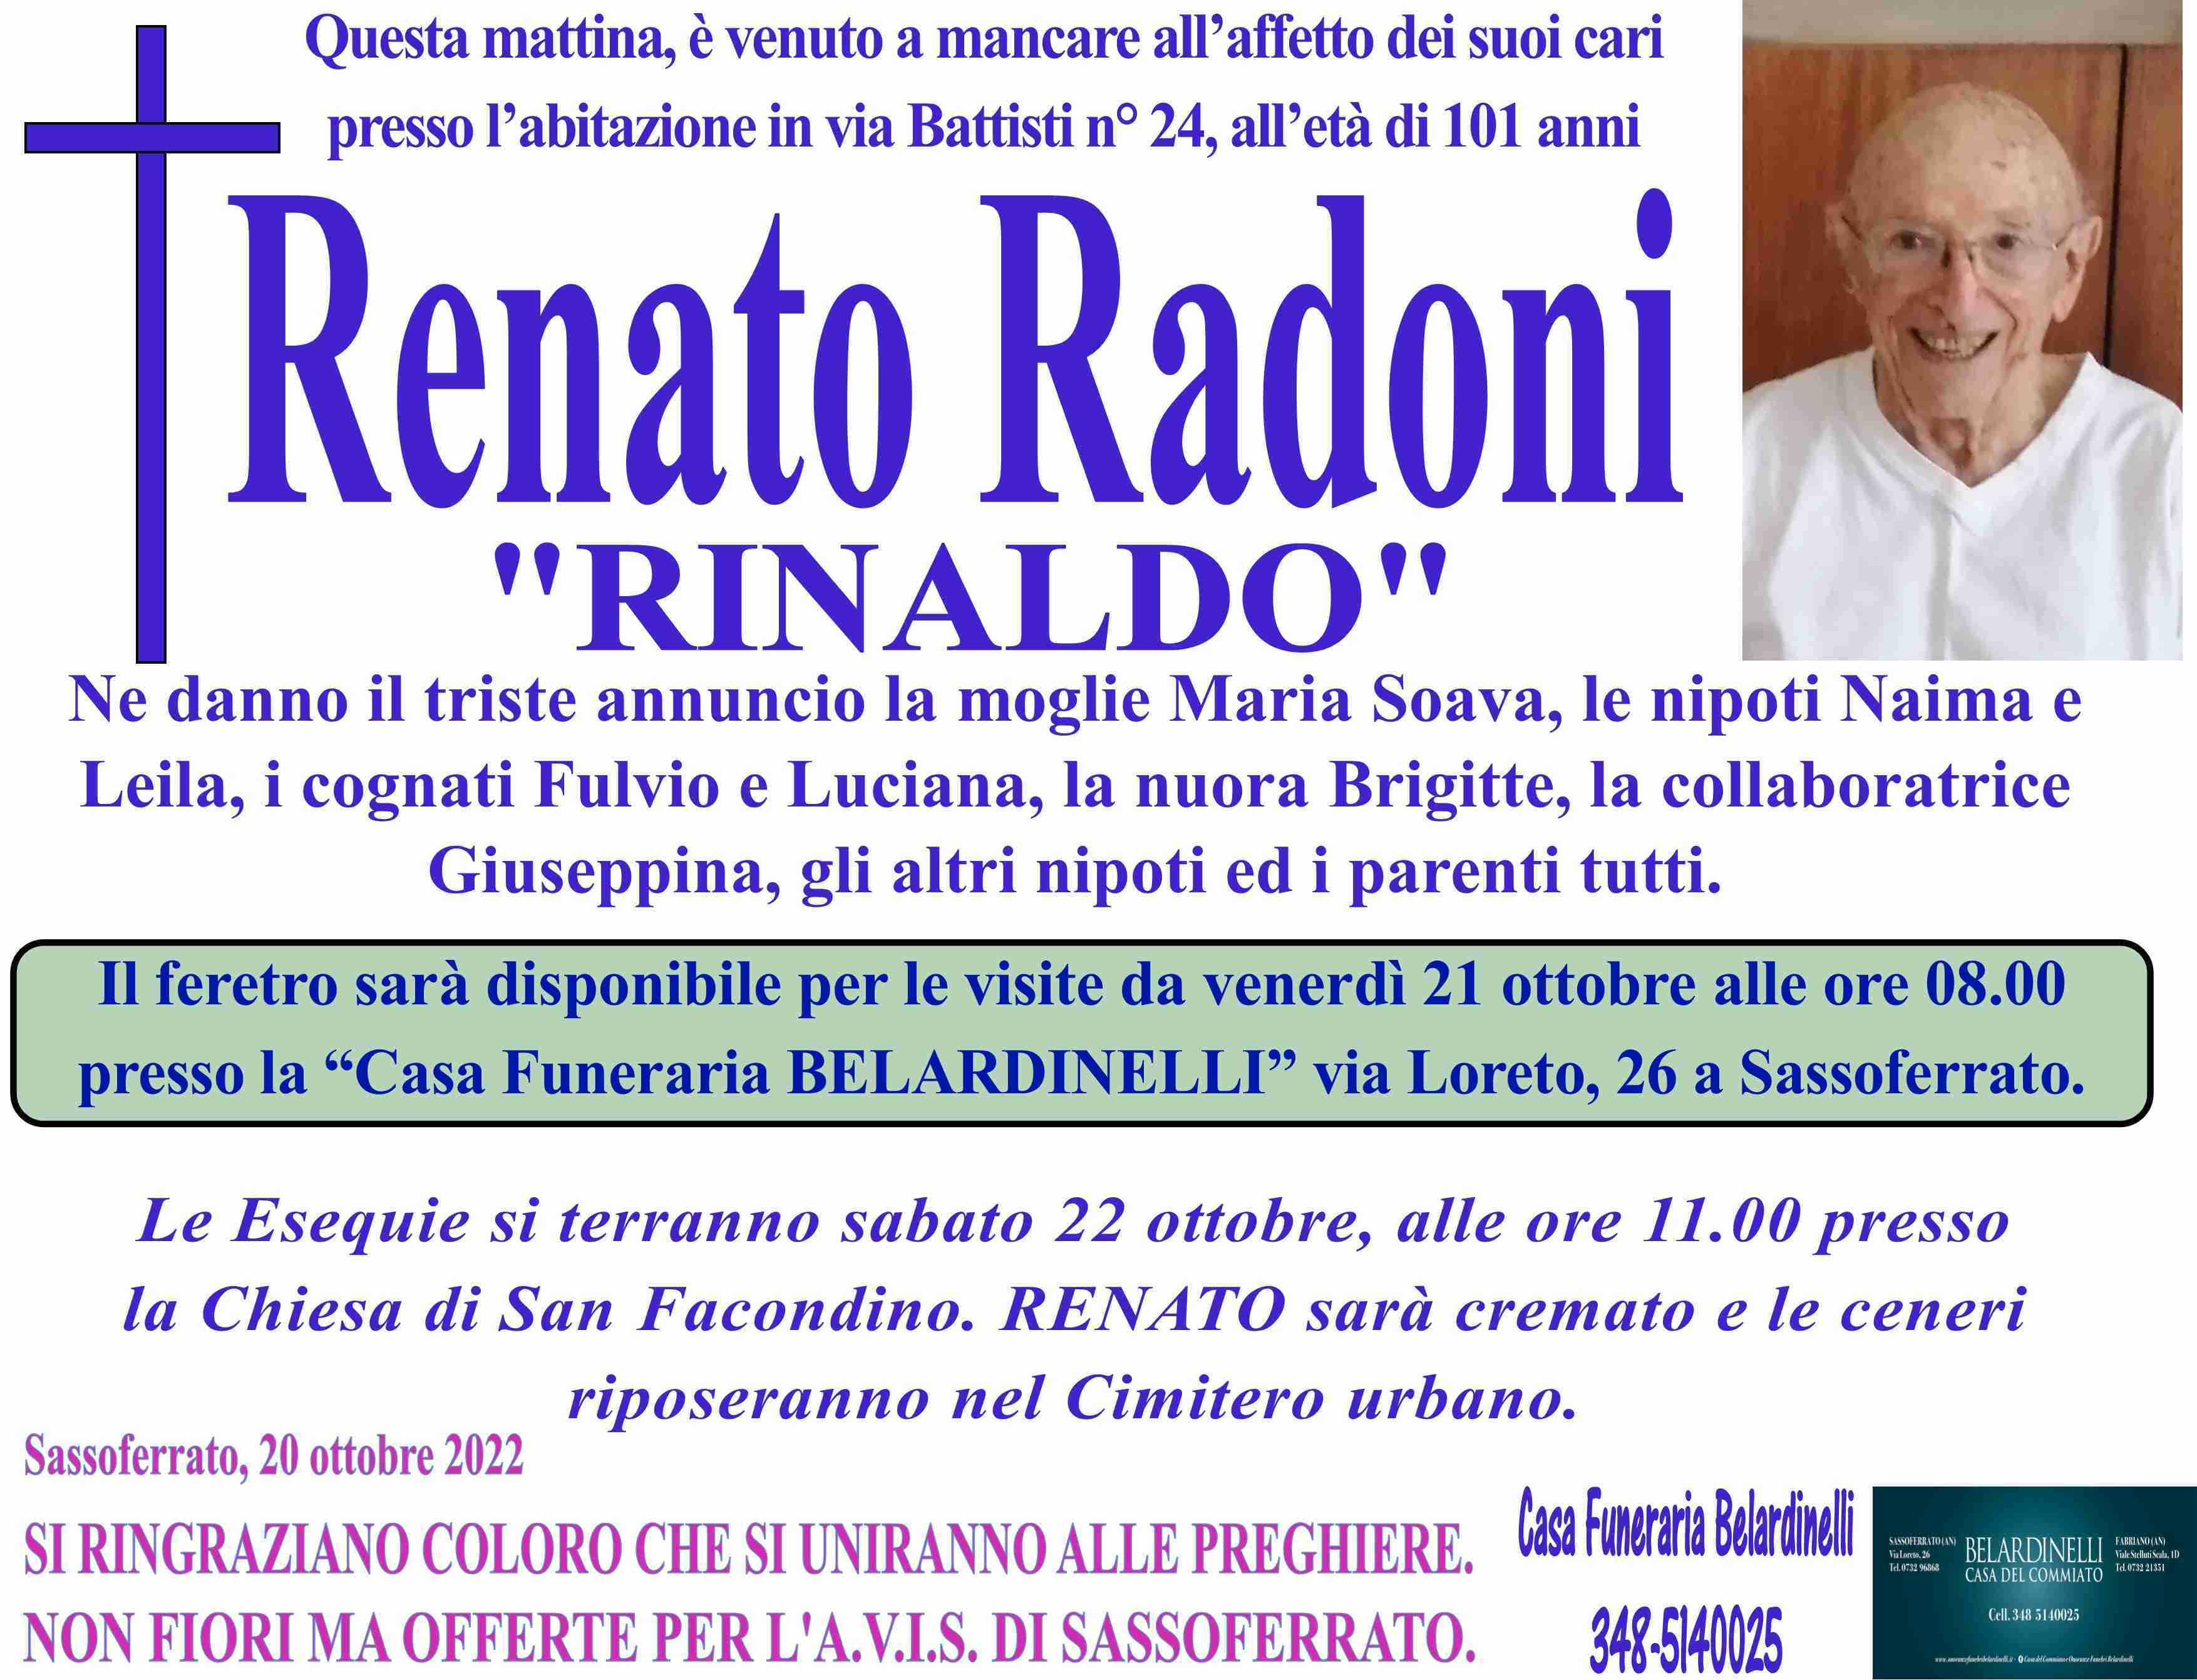 Renato Radoni